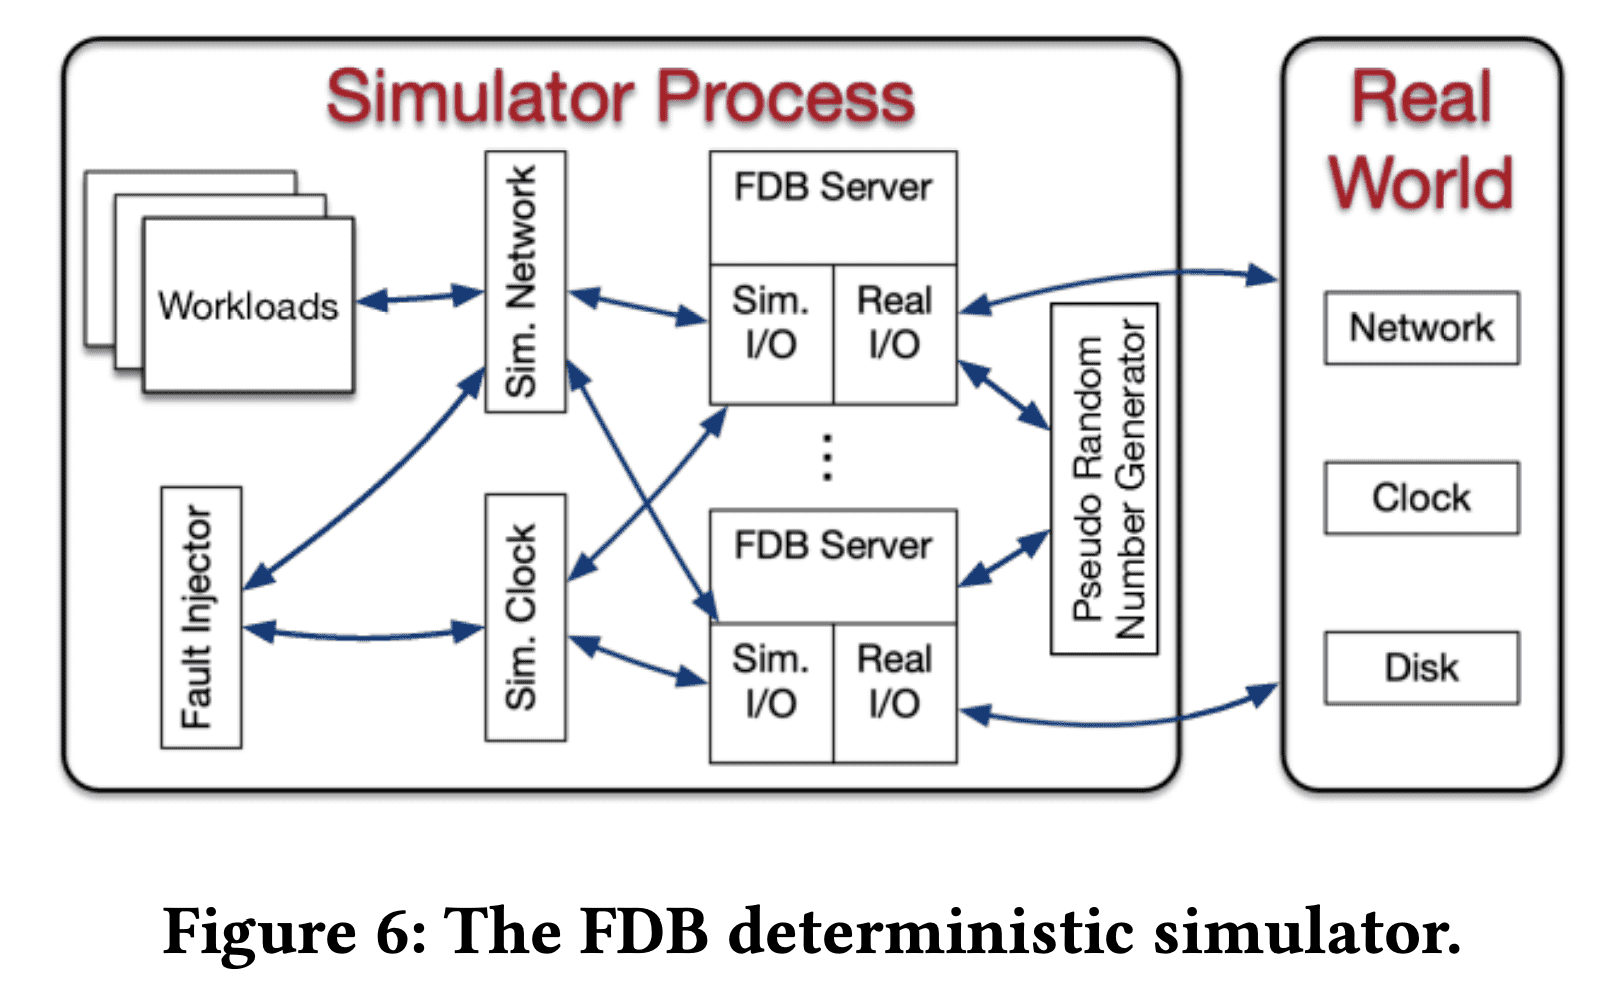 The FDB deterministic simulator